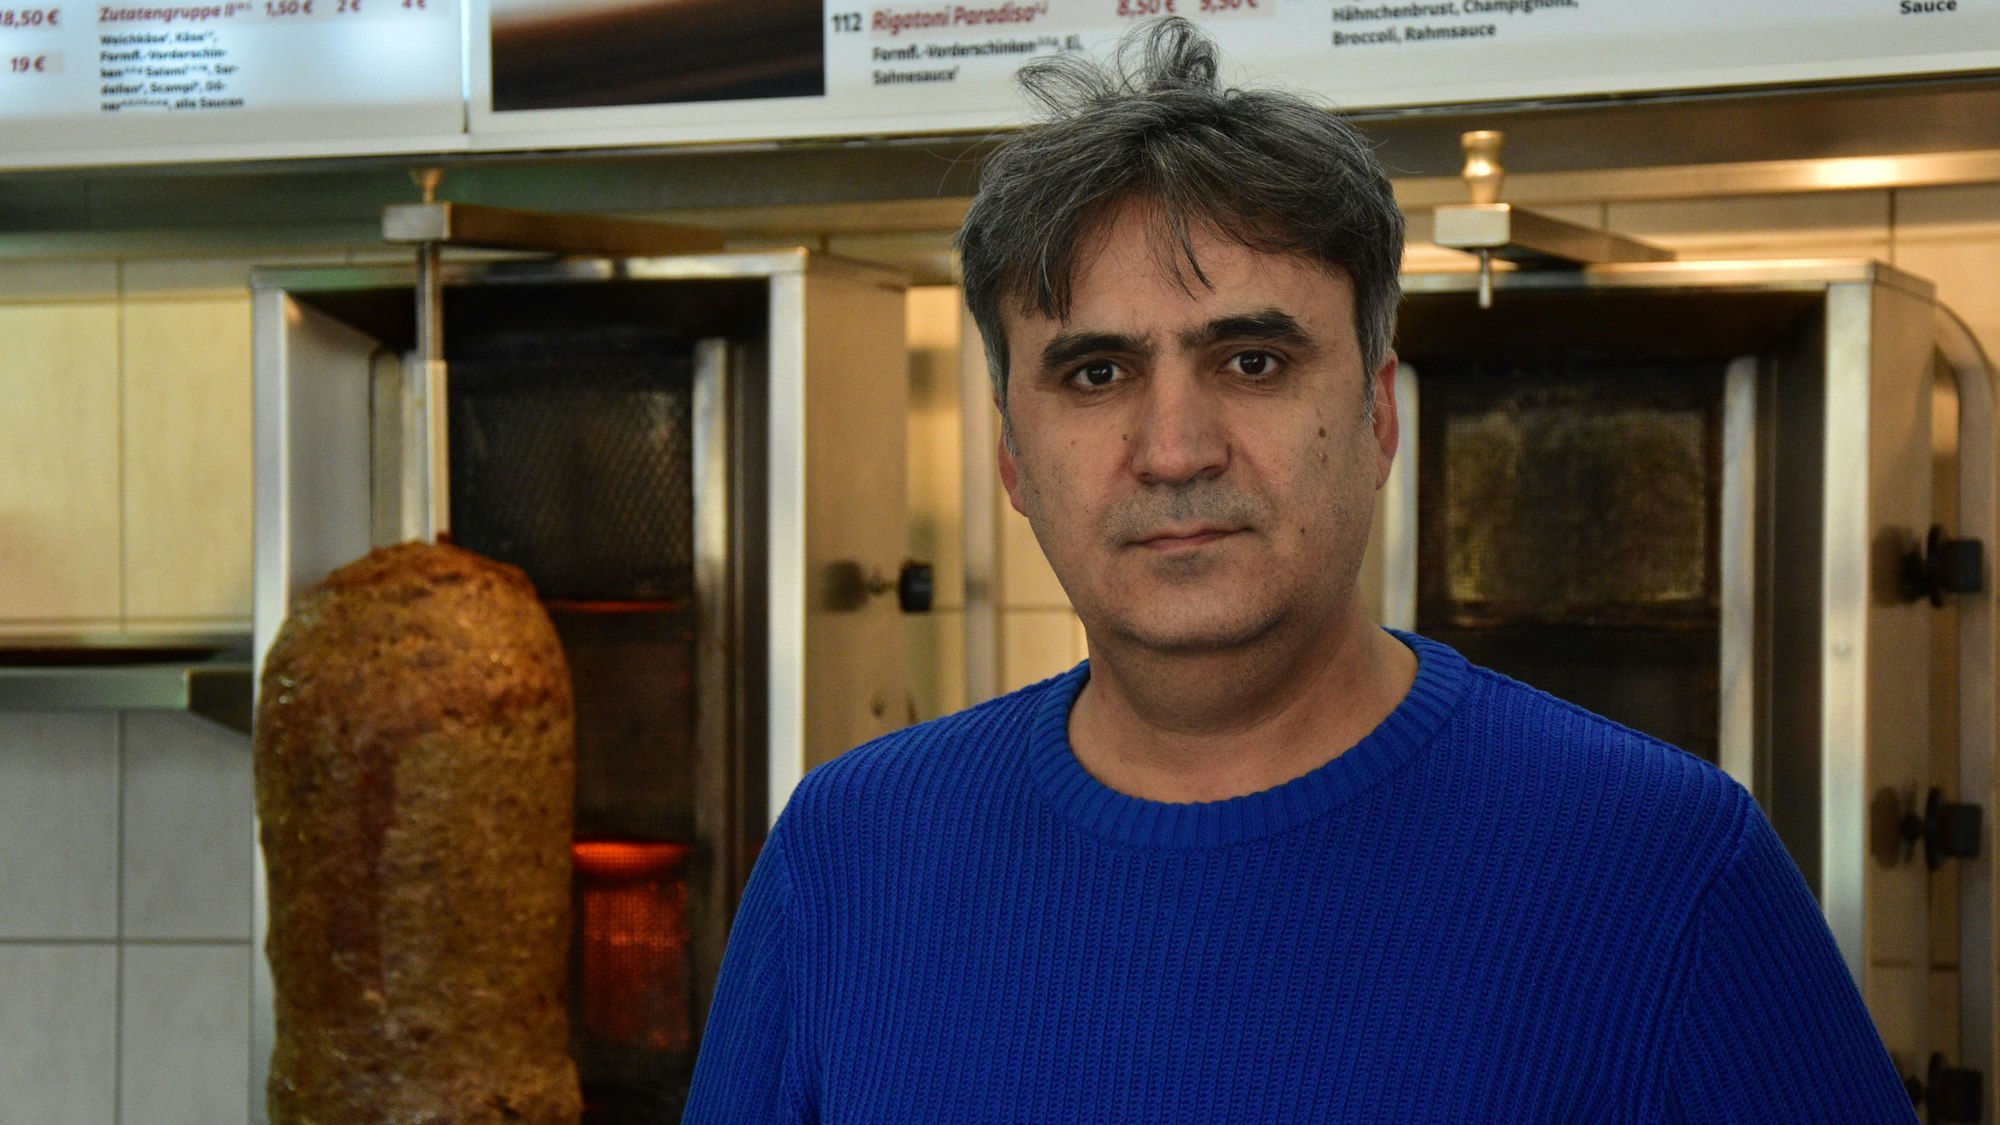 Ugur Arslan betreibt seine 'Pizzeria Saat' seit zehn Jahren. Damals ist er mit einem Dönerpreis von 3,50 Euro gestartet.